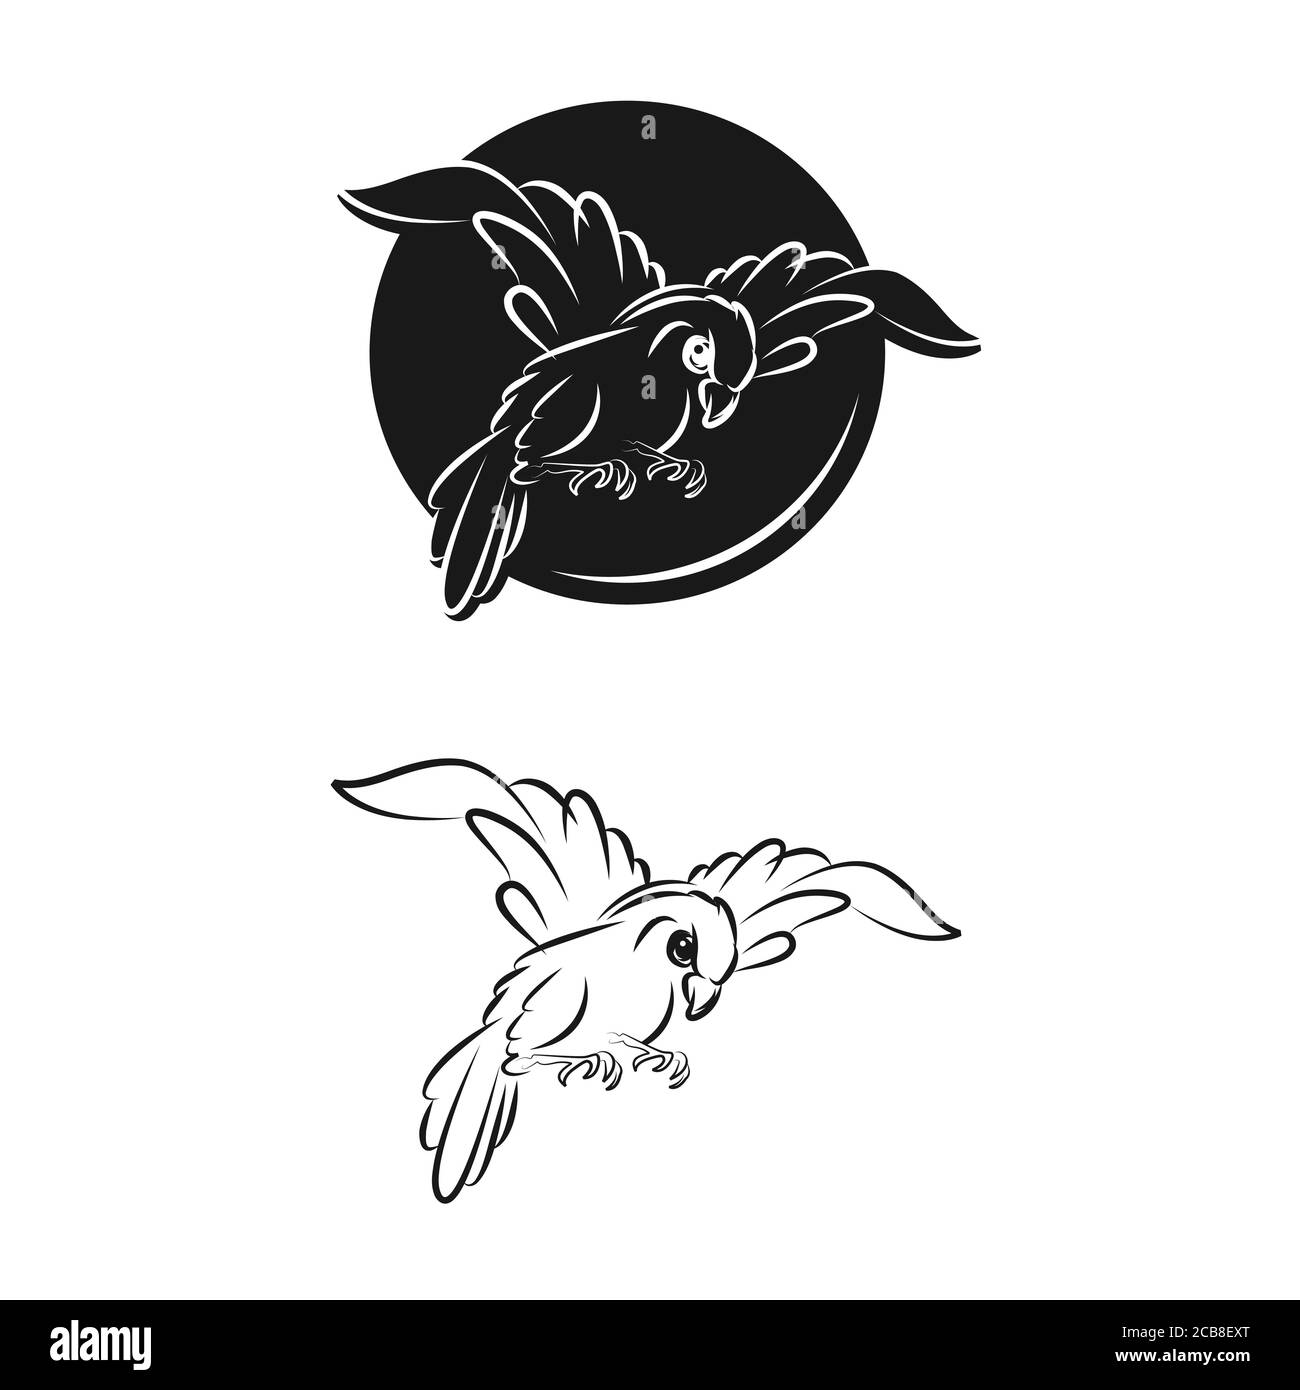 Vogel Vektor-Logo abstrakte Grafik aus Linie und modern mit Blatt. Vektor isolierte Satz von fliegenden Vögeln mit ausgebreiteten flatternden Flügeln. Stock Vektor